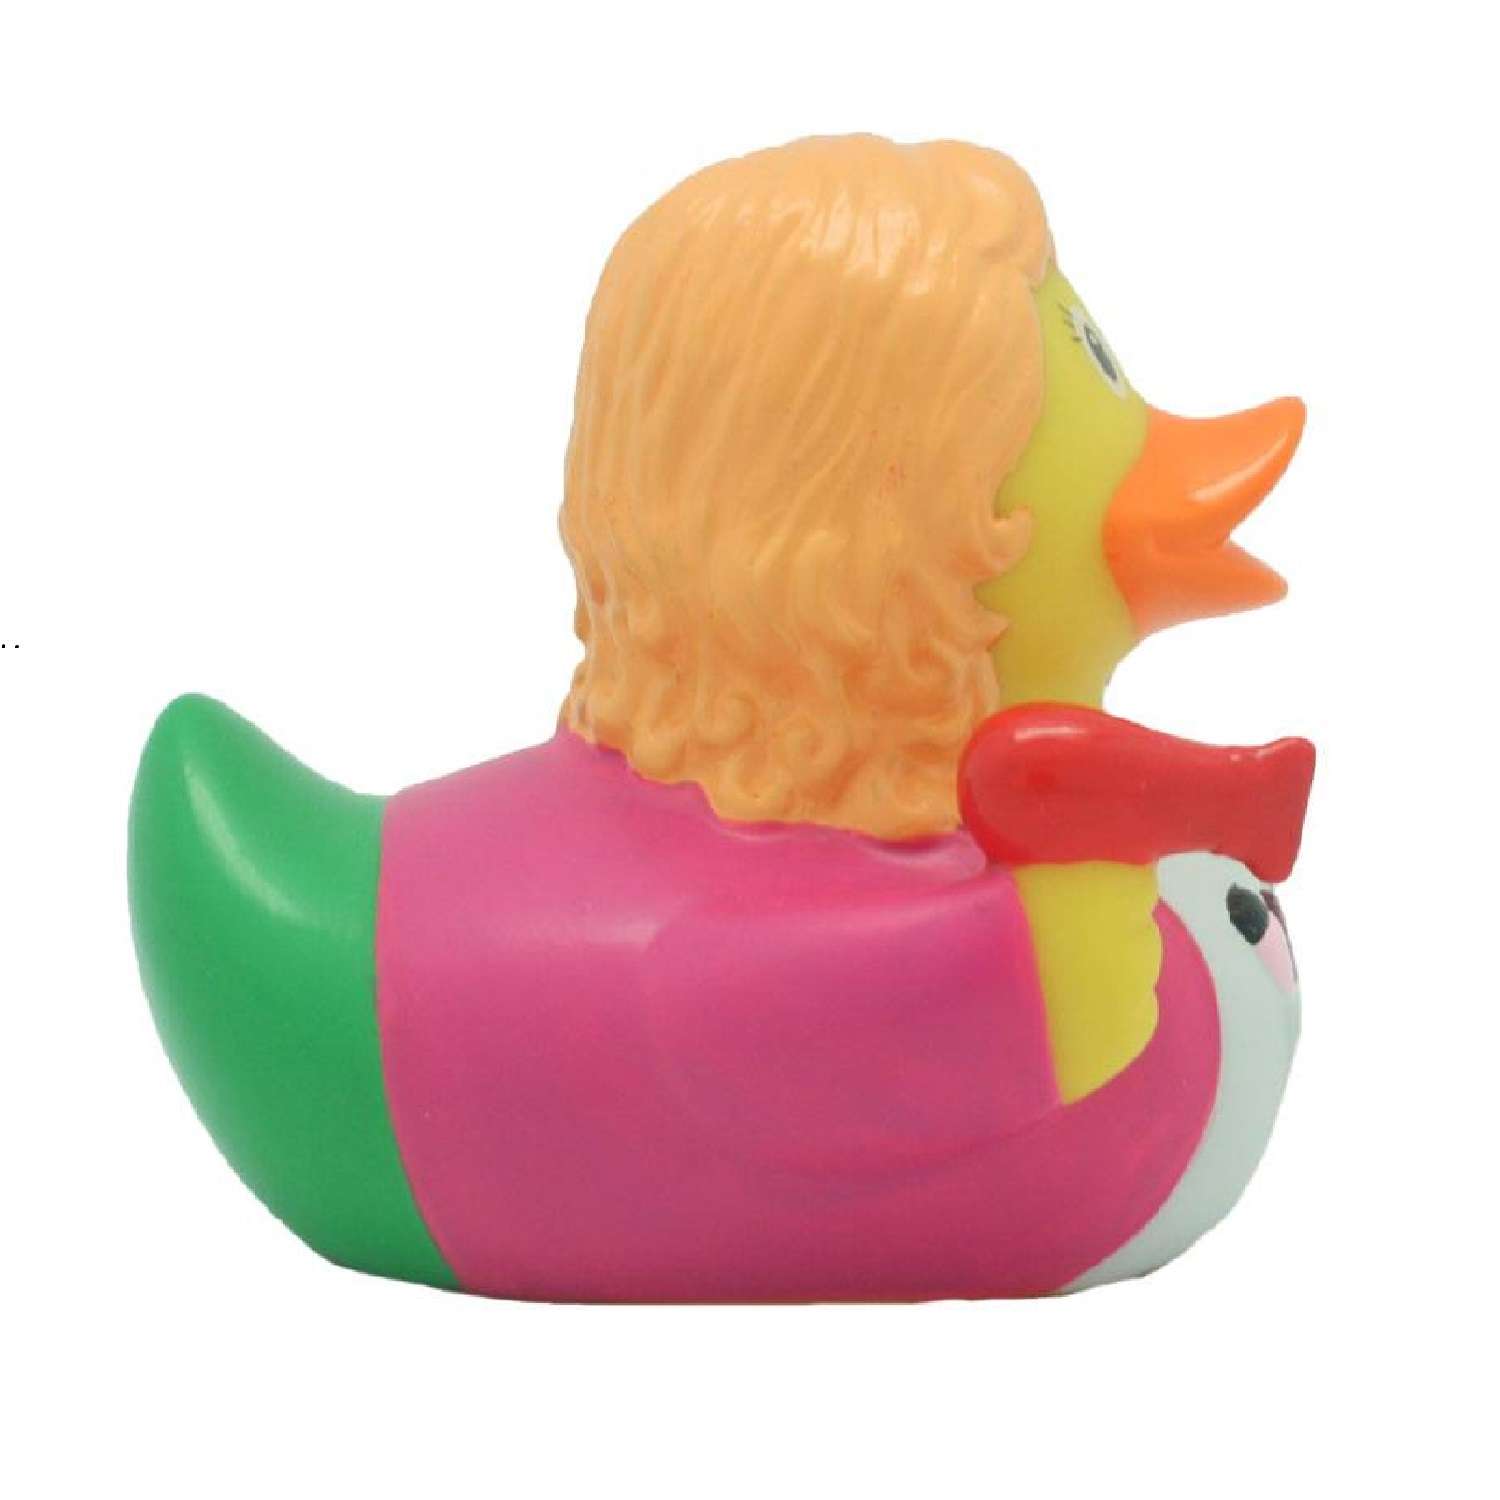 Игрушка Funny ducks для ванной Парикмахер уточка 2047 - фото 2